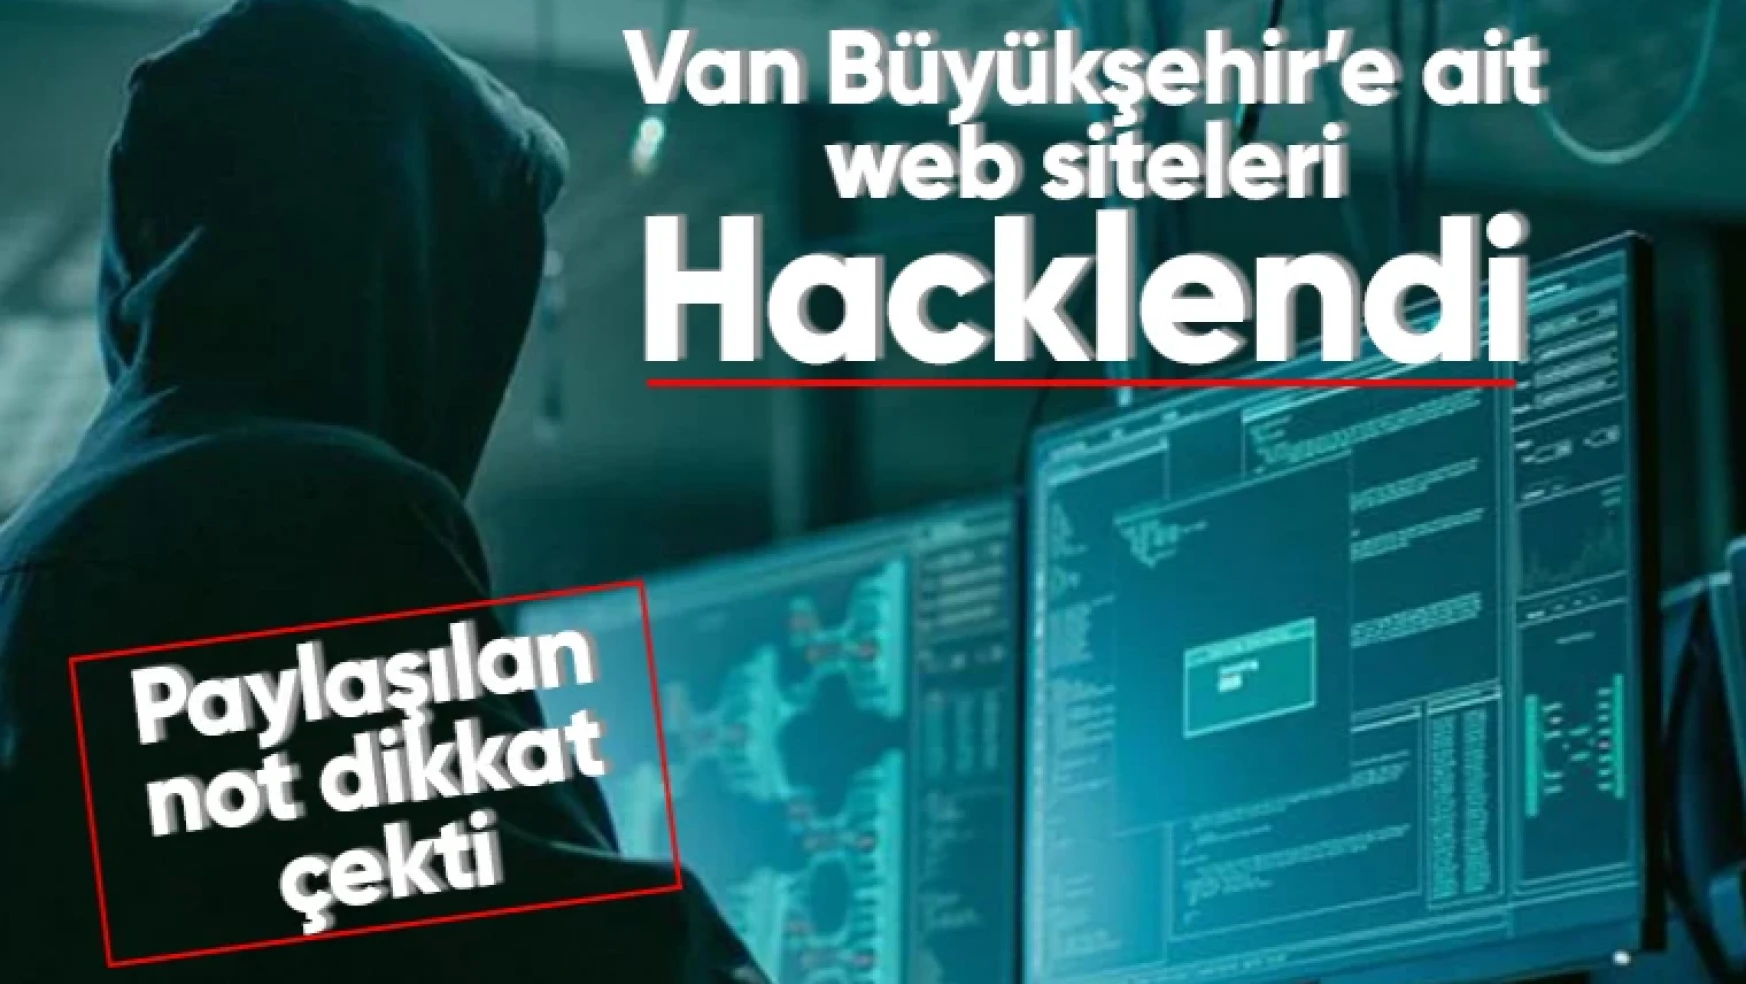 Son dakika...Van Büyükşehir Belediyesi'ne ait web sitesi hacklandi